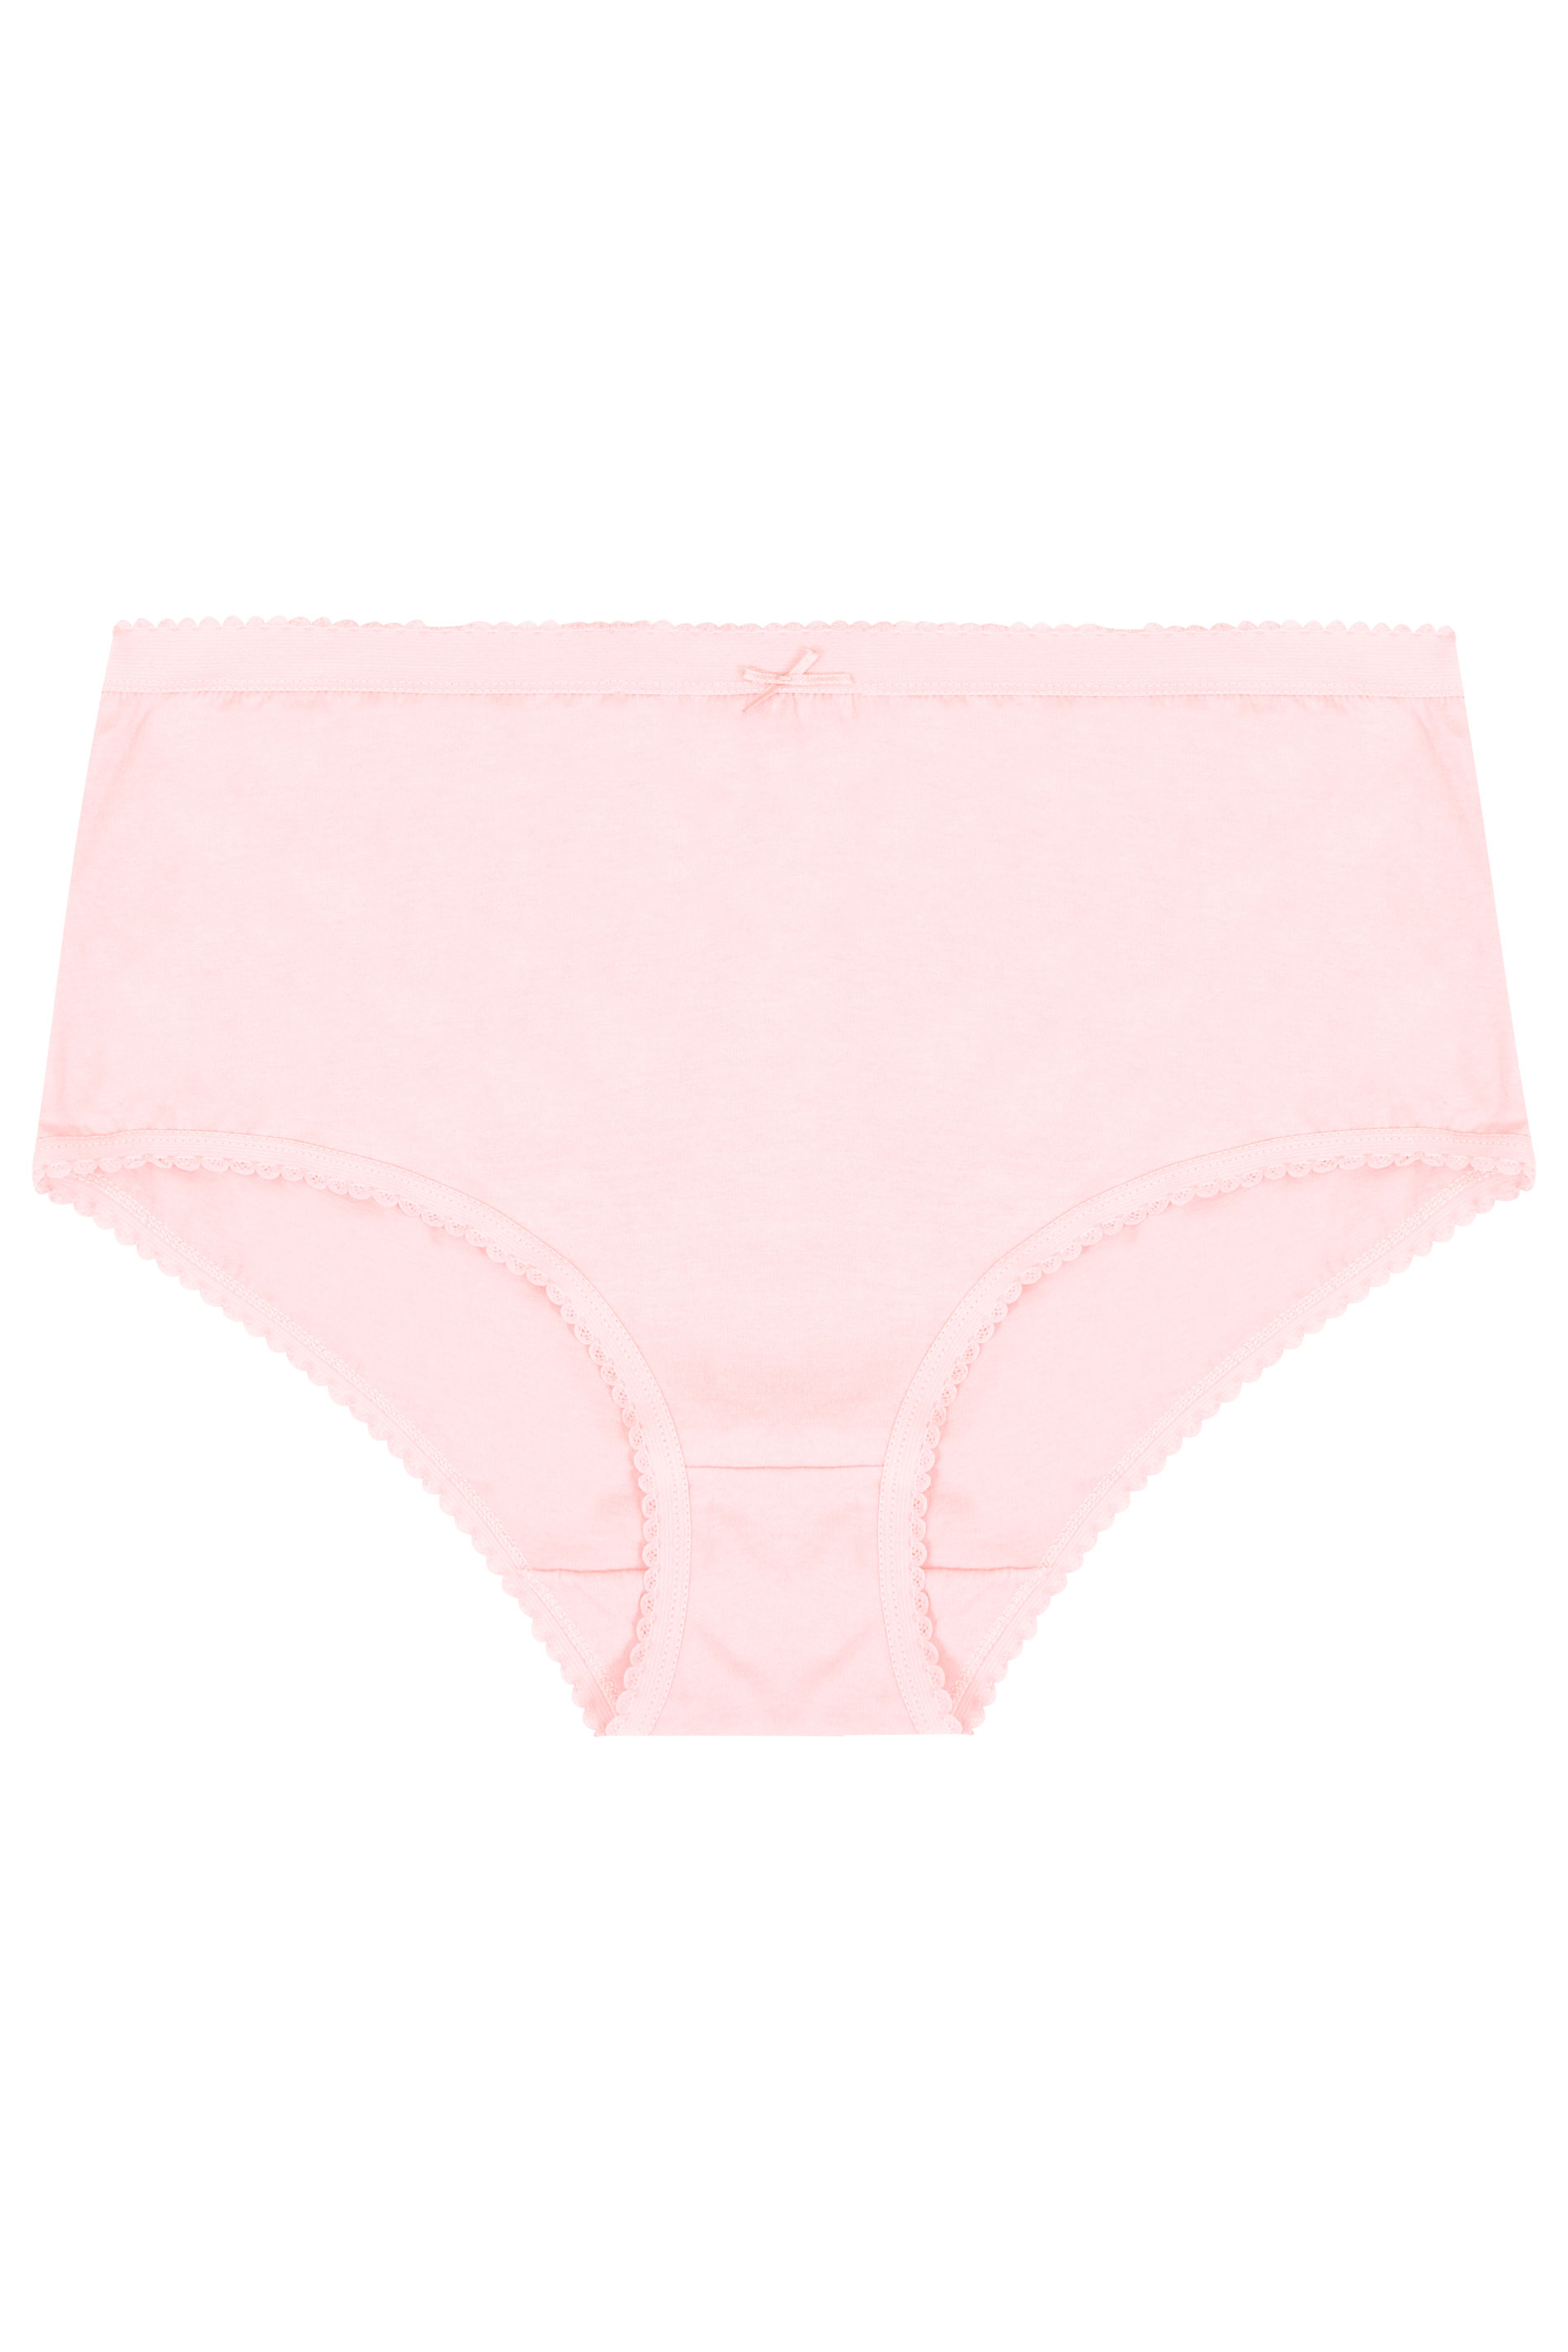 Plus Size Fashion Cotton Pink Spot Print Thong